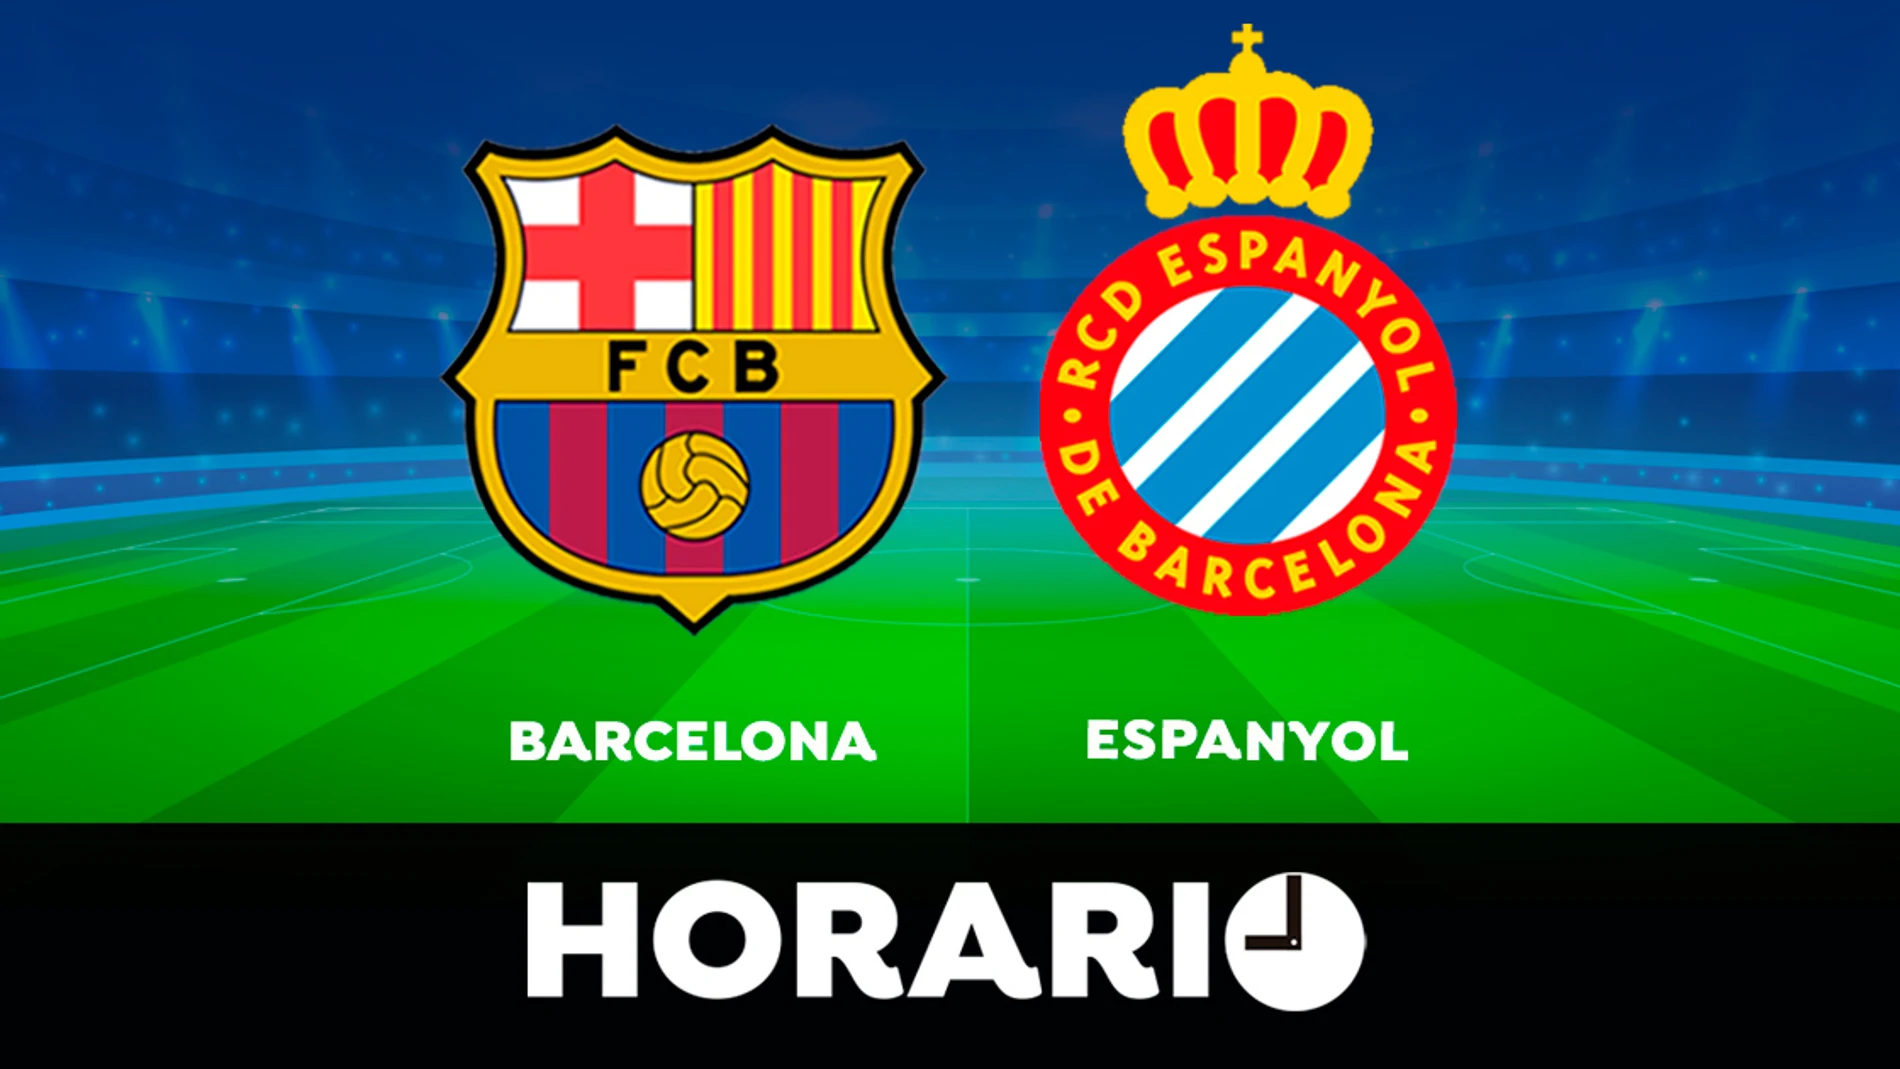 Barcelona - Espanyol: Horario y donde partido de la Santander directo